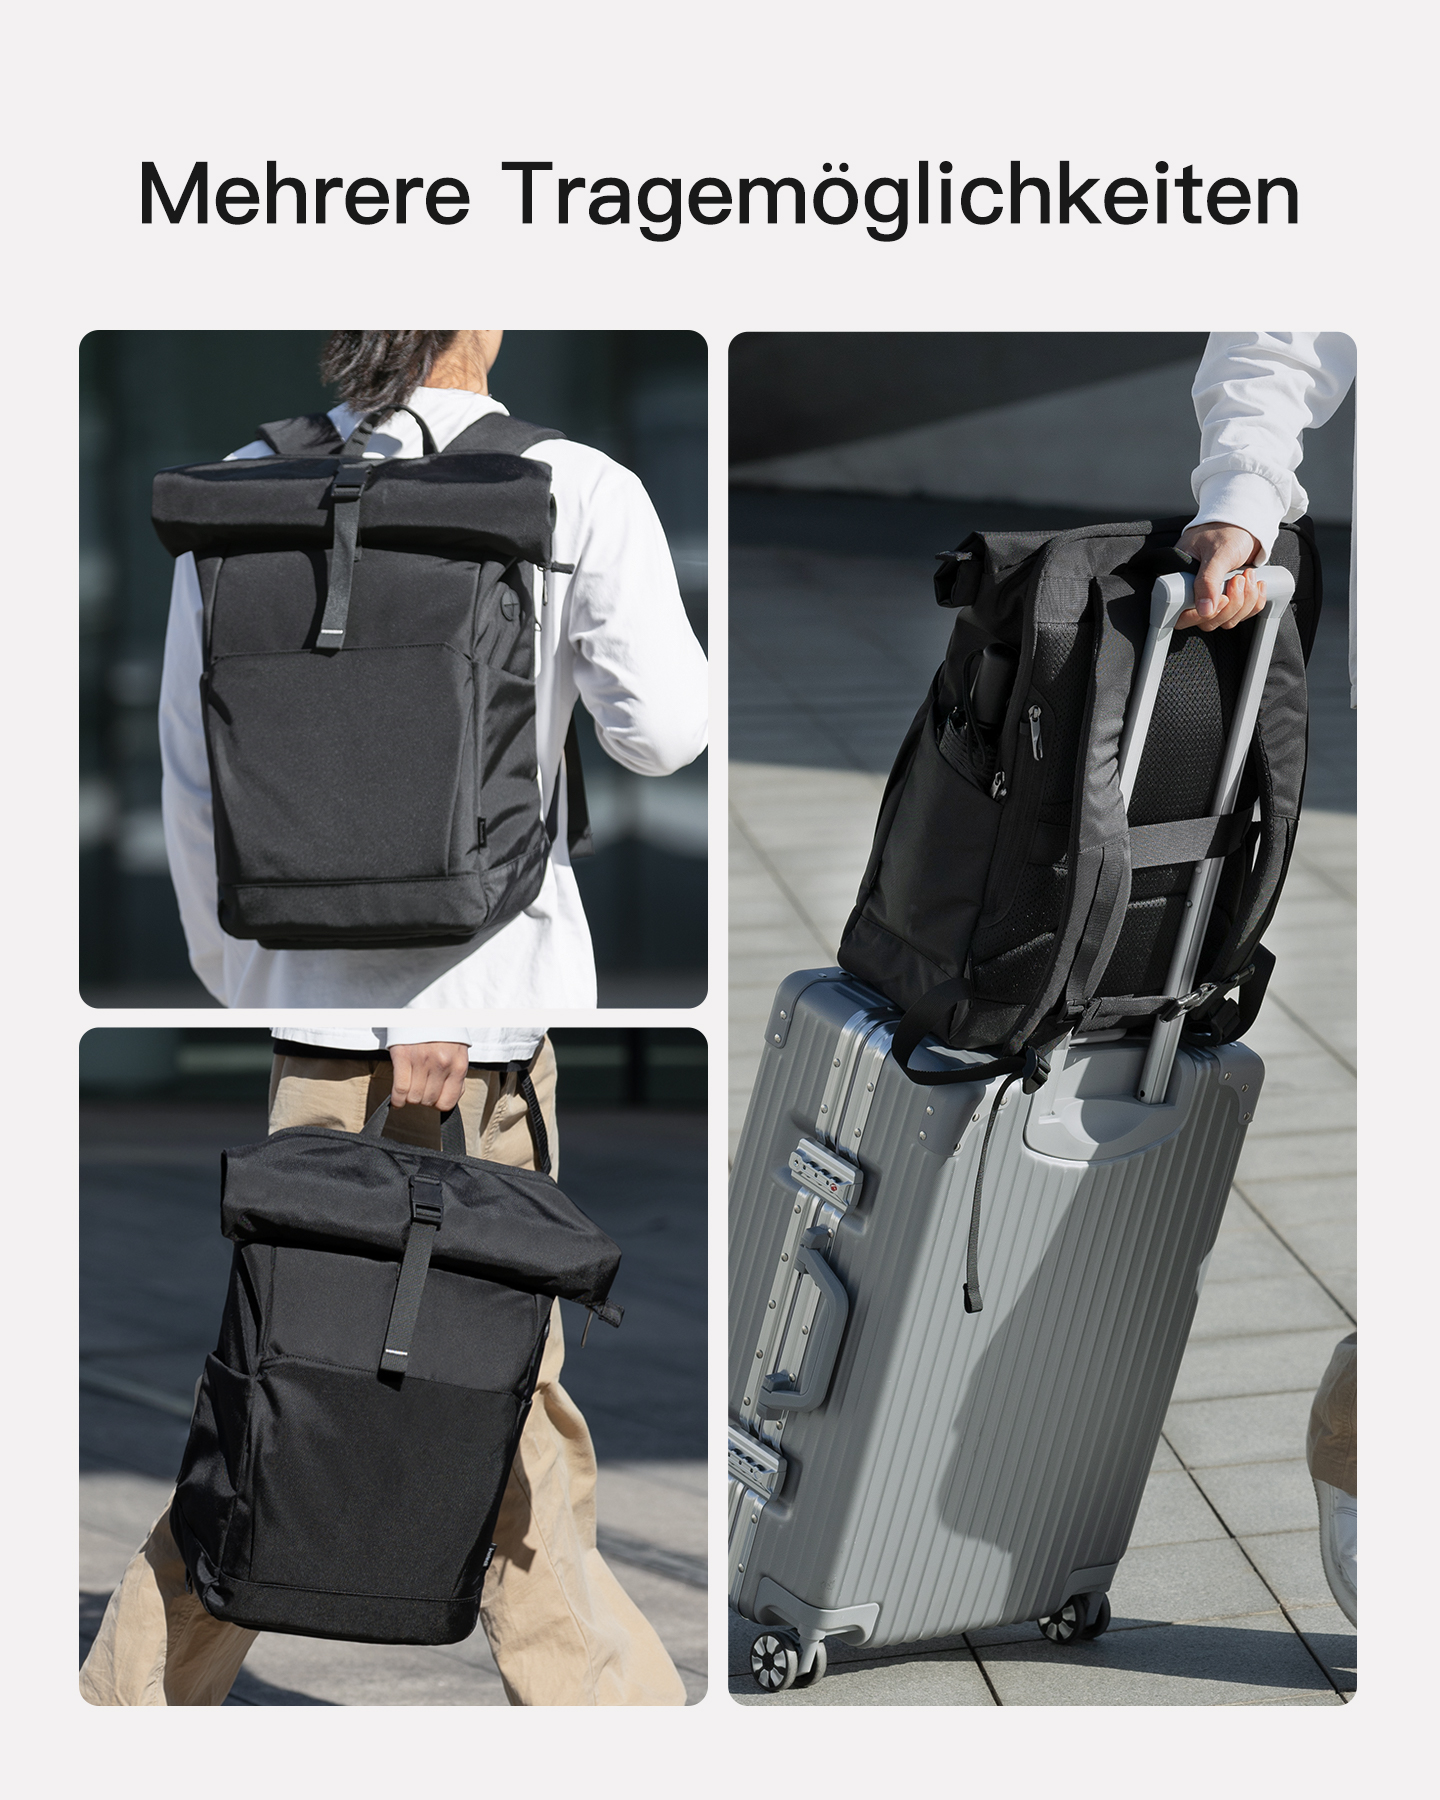 für Unisex, INATECK Rucksack black, 30L separatem BP01007_black Schuhfach Uni/Pendeln/Freizeit/Arbeit/Sport/Reisen mit